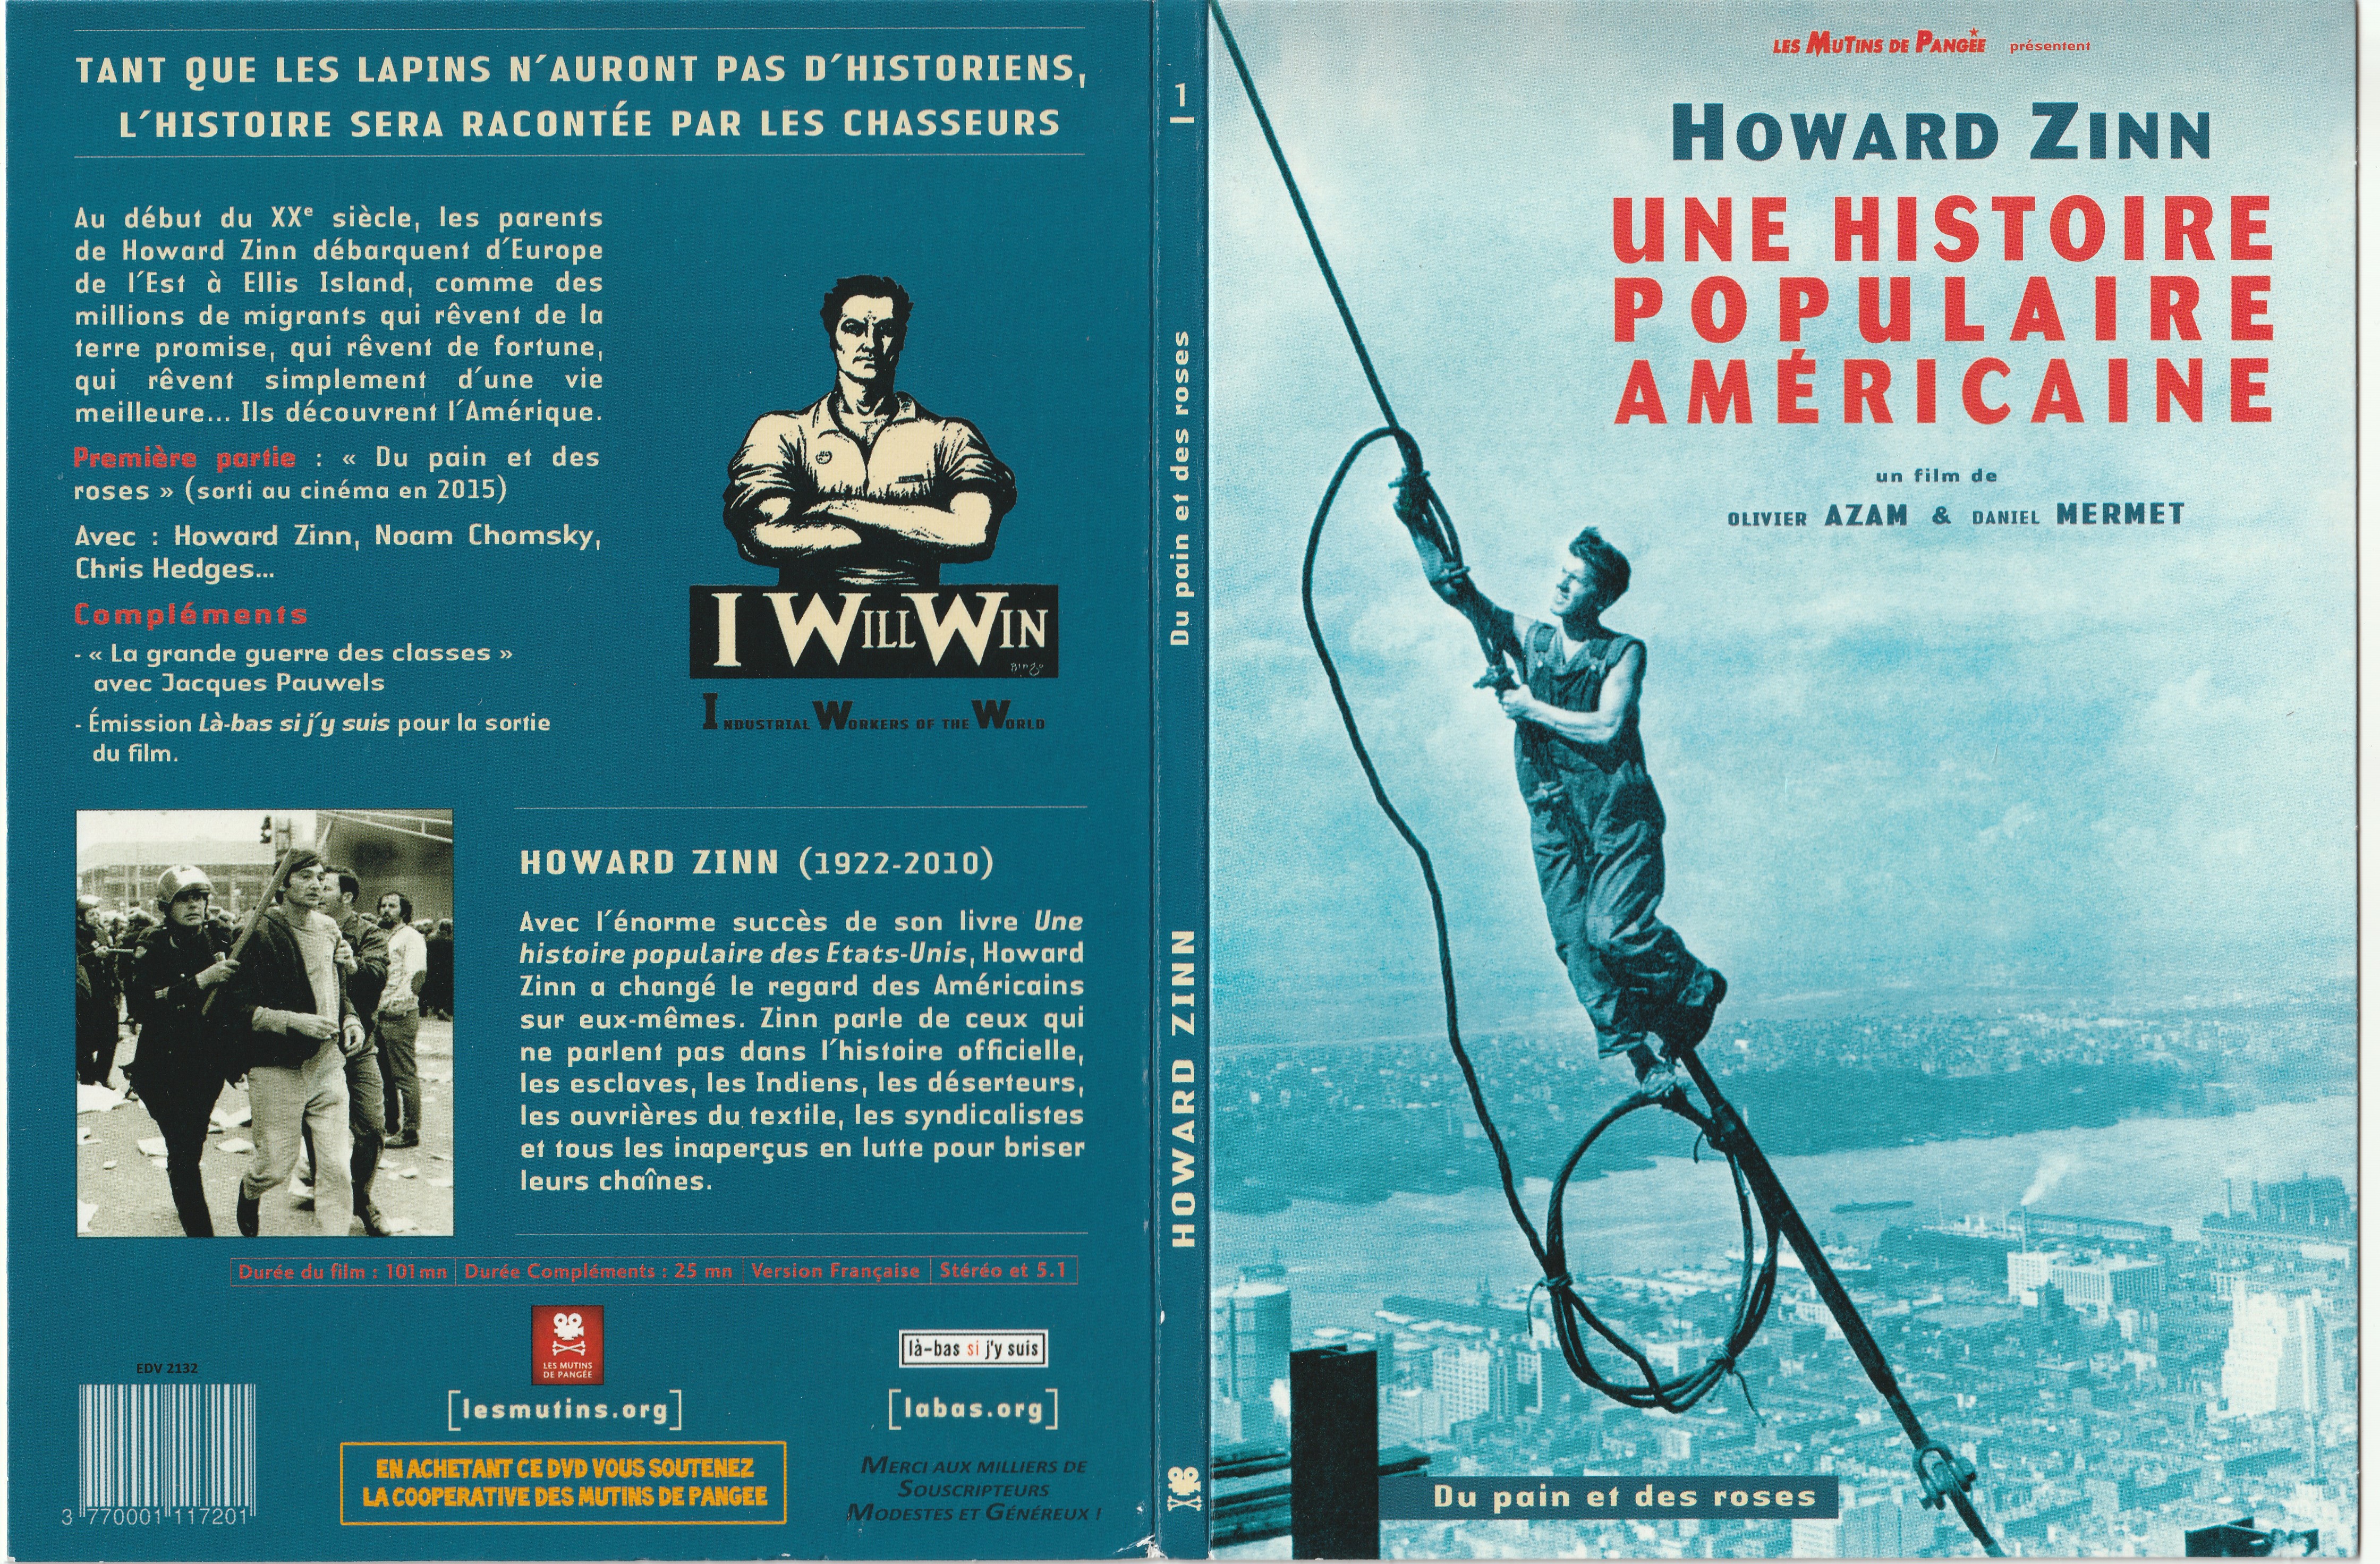 Jaquette DVD Howard Zinn une histoire populaire amricaine